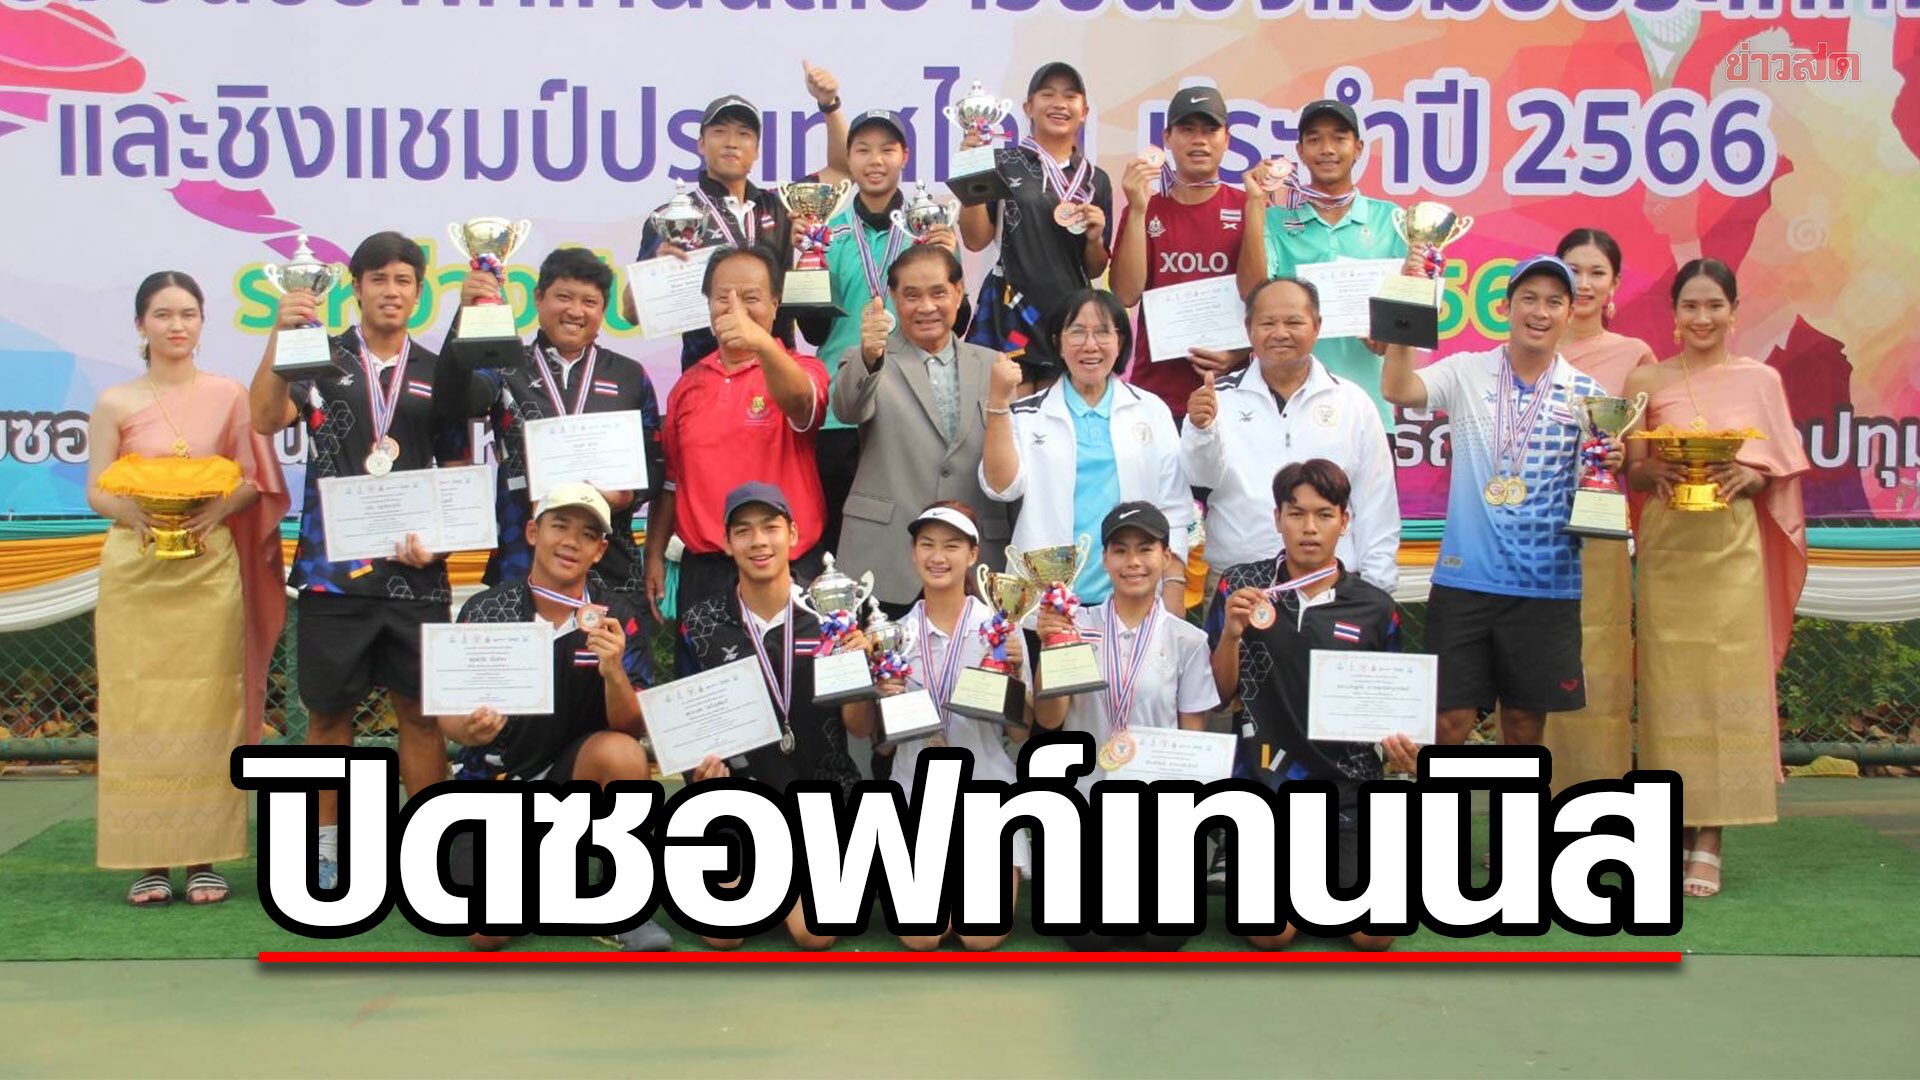 ปิดชื่นมื่น ซอฟท์เทนนิสเยาวชนชิงแชมป์ประเทศไทย – ณัชชา แชมป์หญิงเดี่ยว